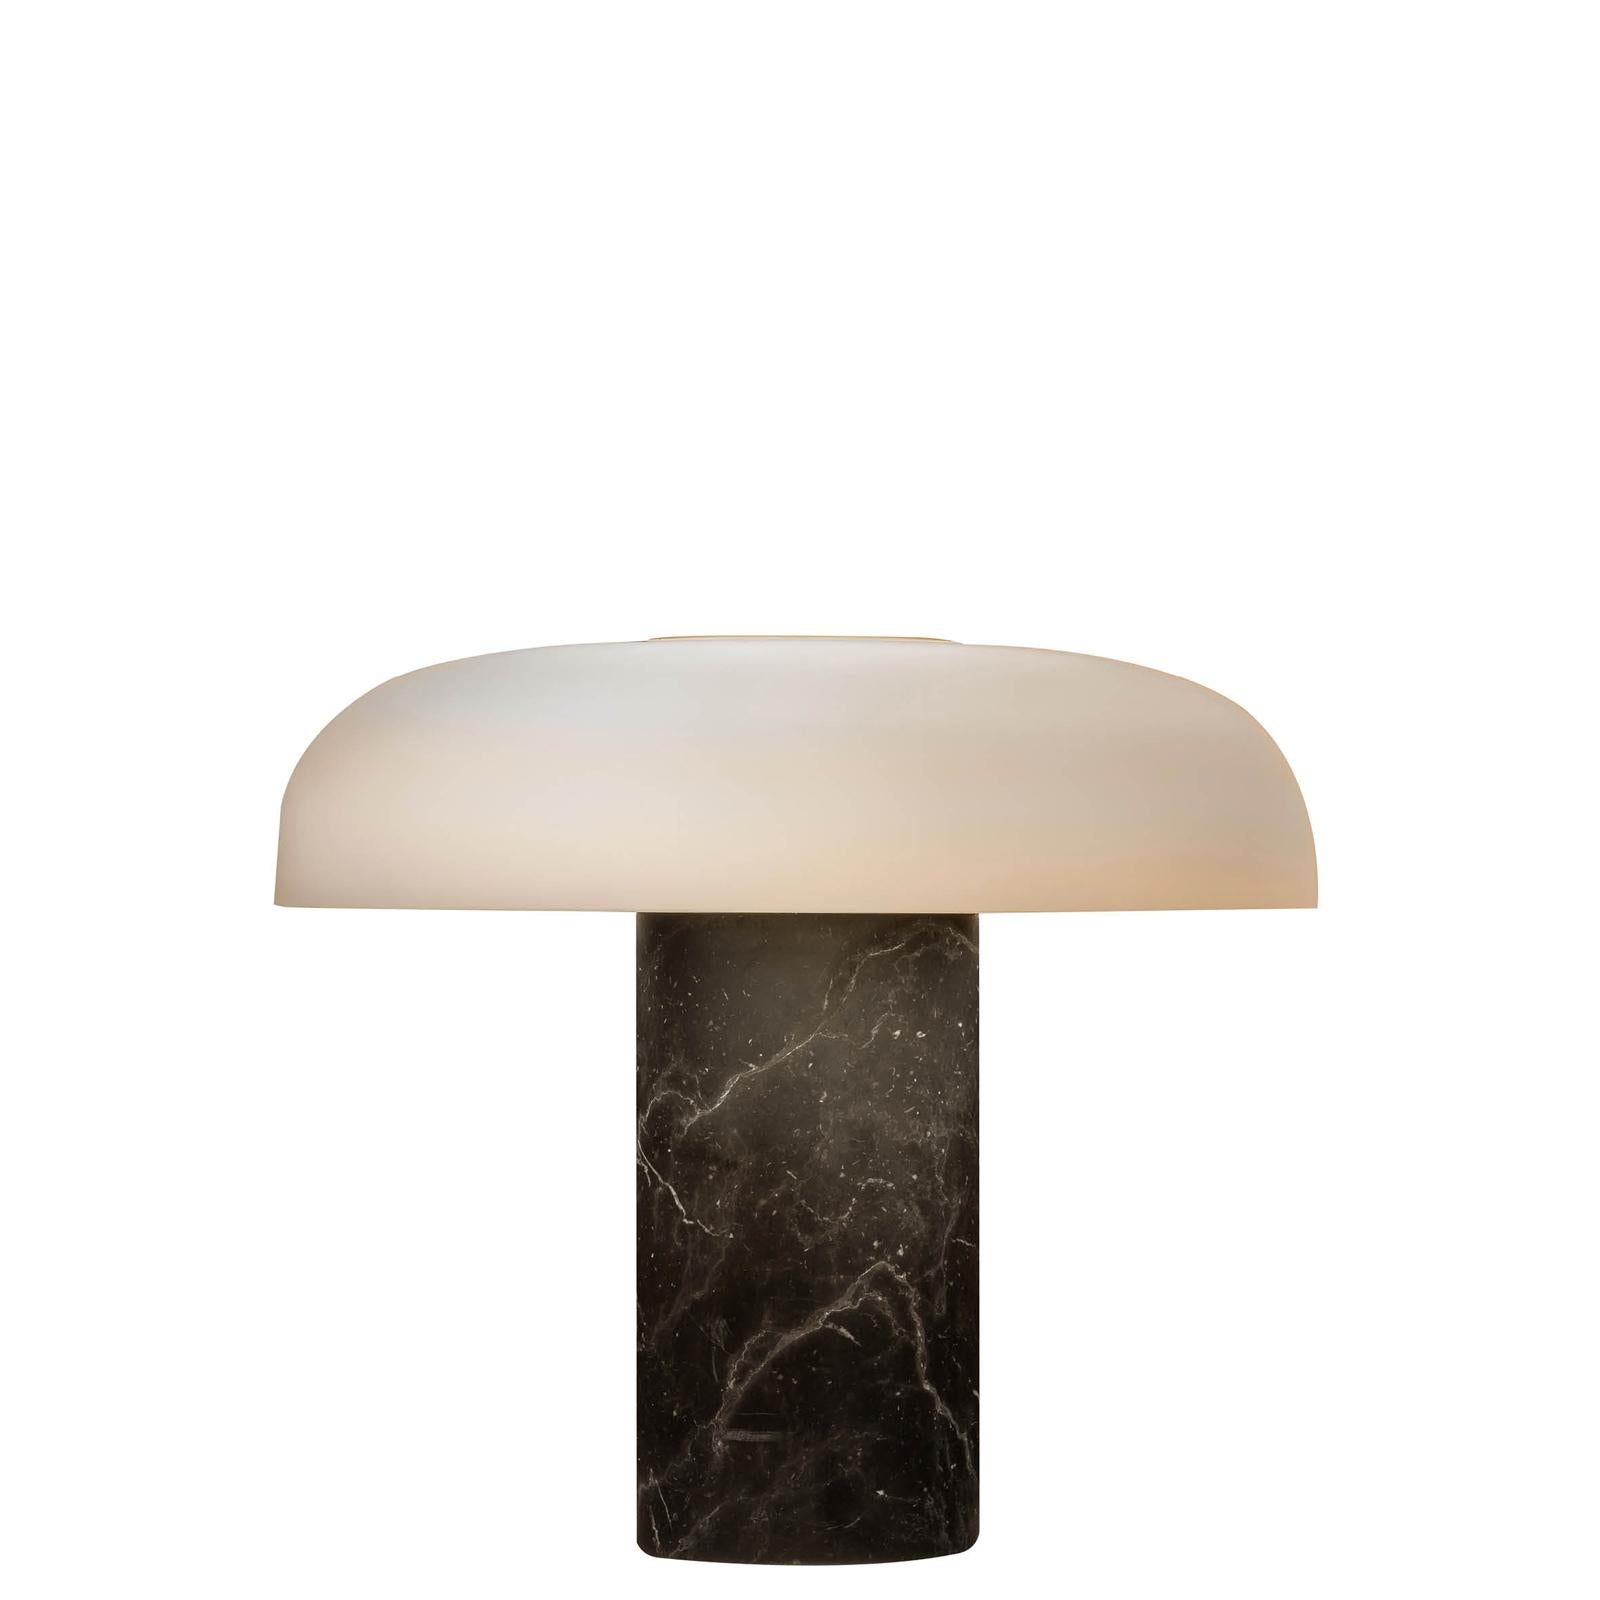 Lampe de table 'Tropico' en marbre noir et verre de Studio Buratti pour Fontana Arte. 

Exécuté en marbre de haute qualité, en verre opalin épais gravé et soufflé à la main et en métal noir brillant galvanisé. La 